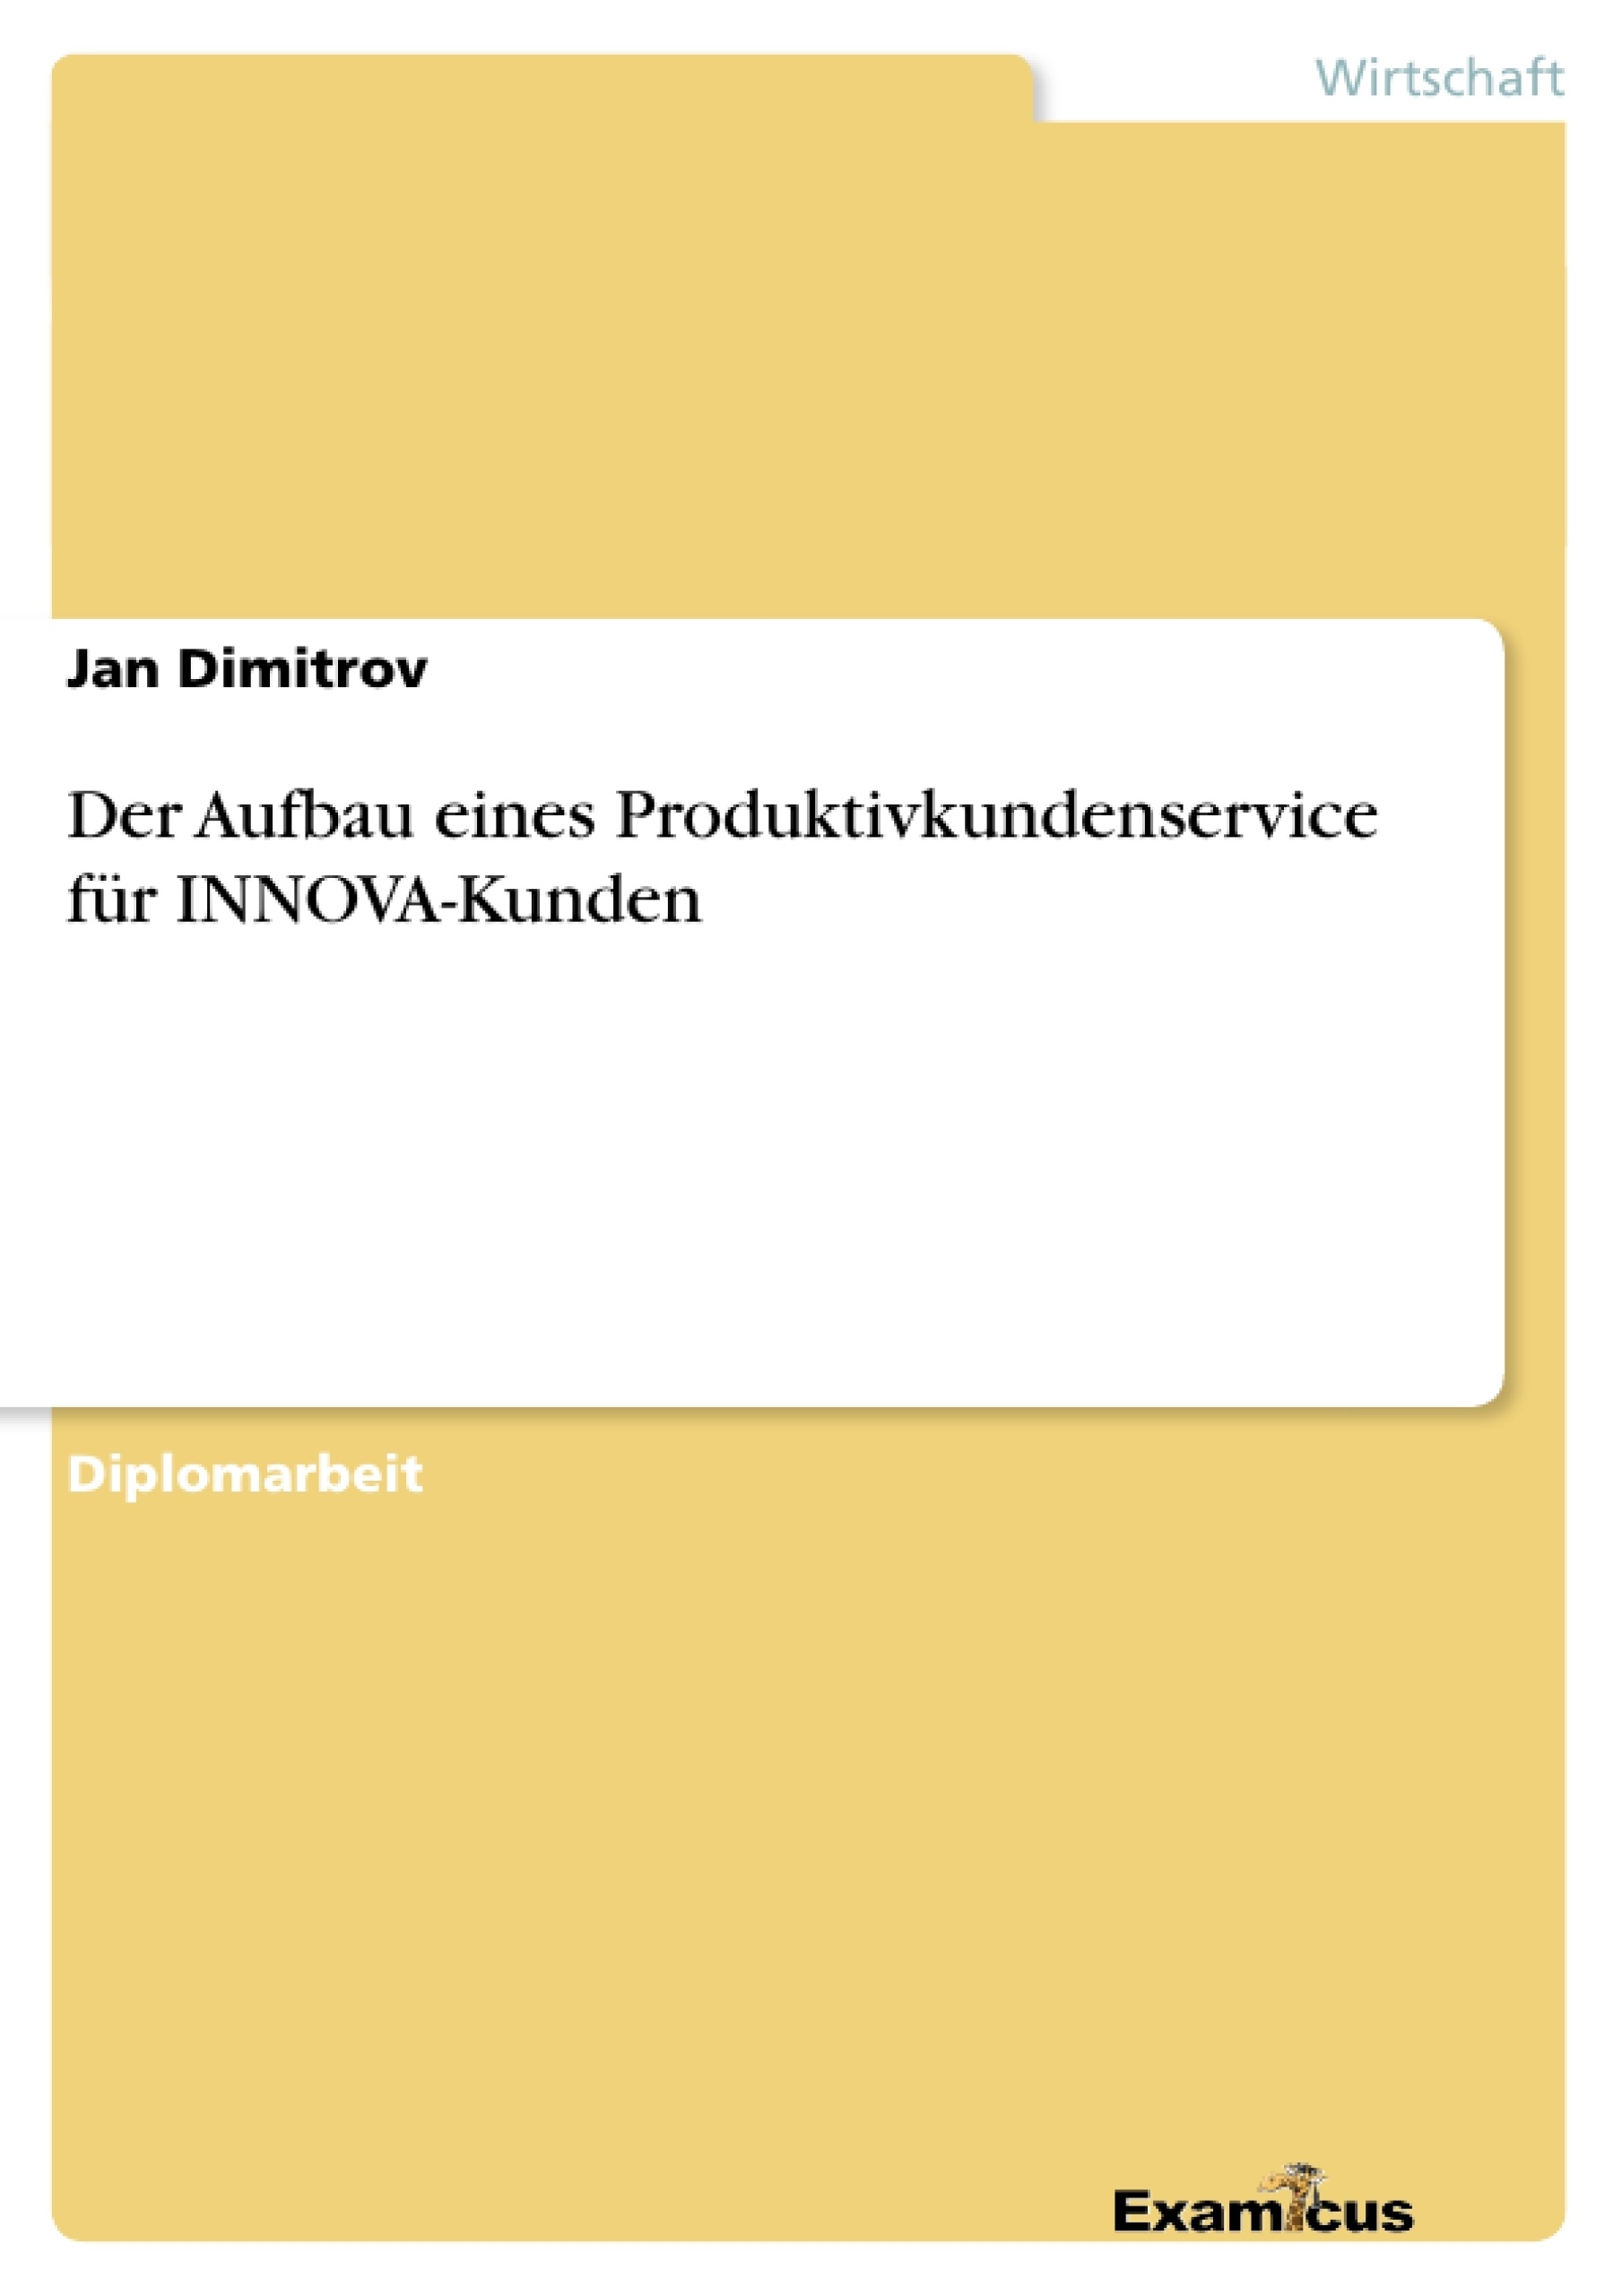 Título: Der Aufbau eines Produktivkundenservice für INNOVA-Kunden